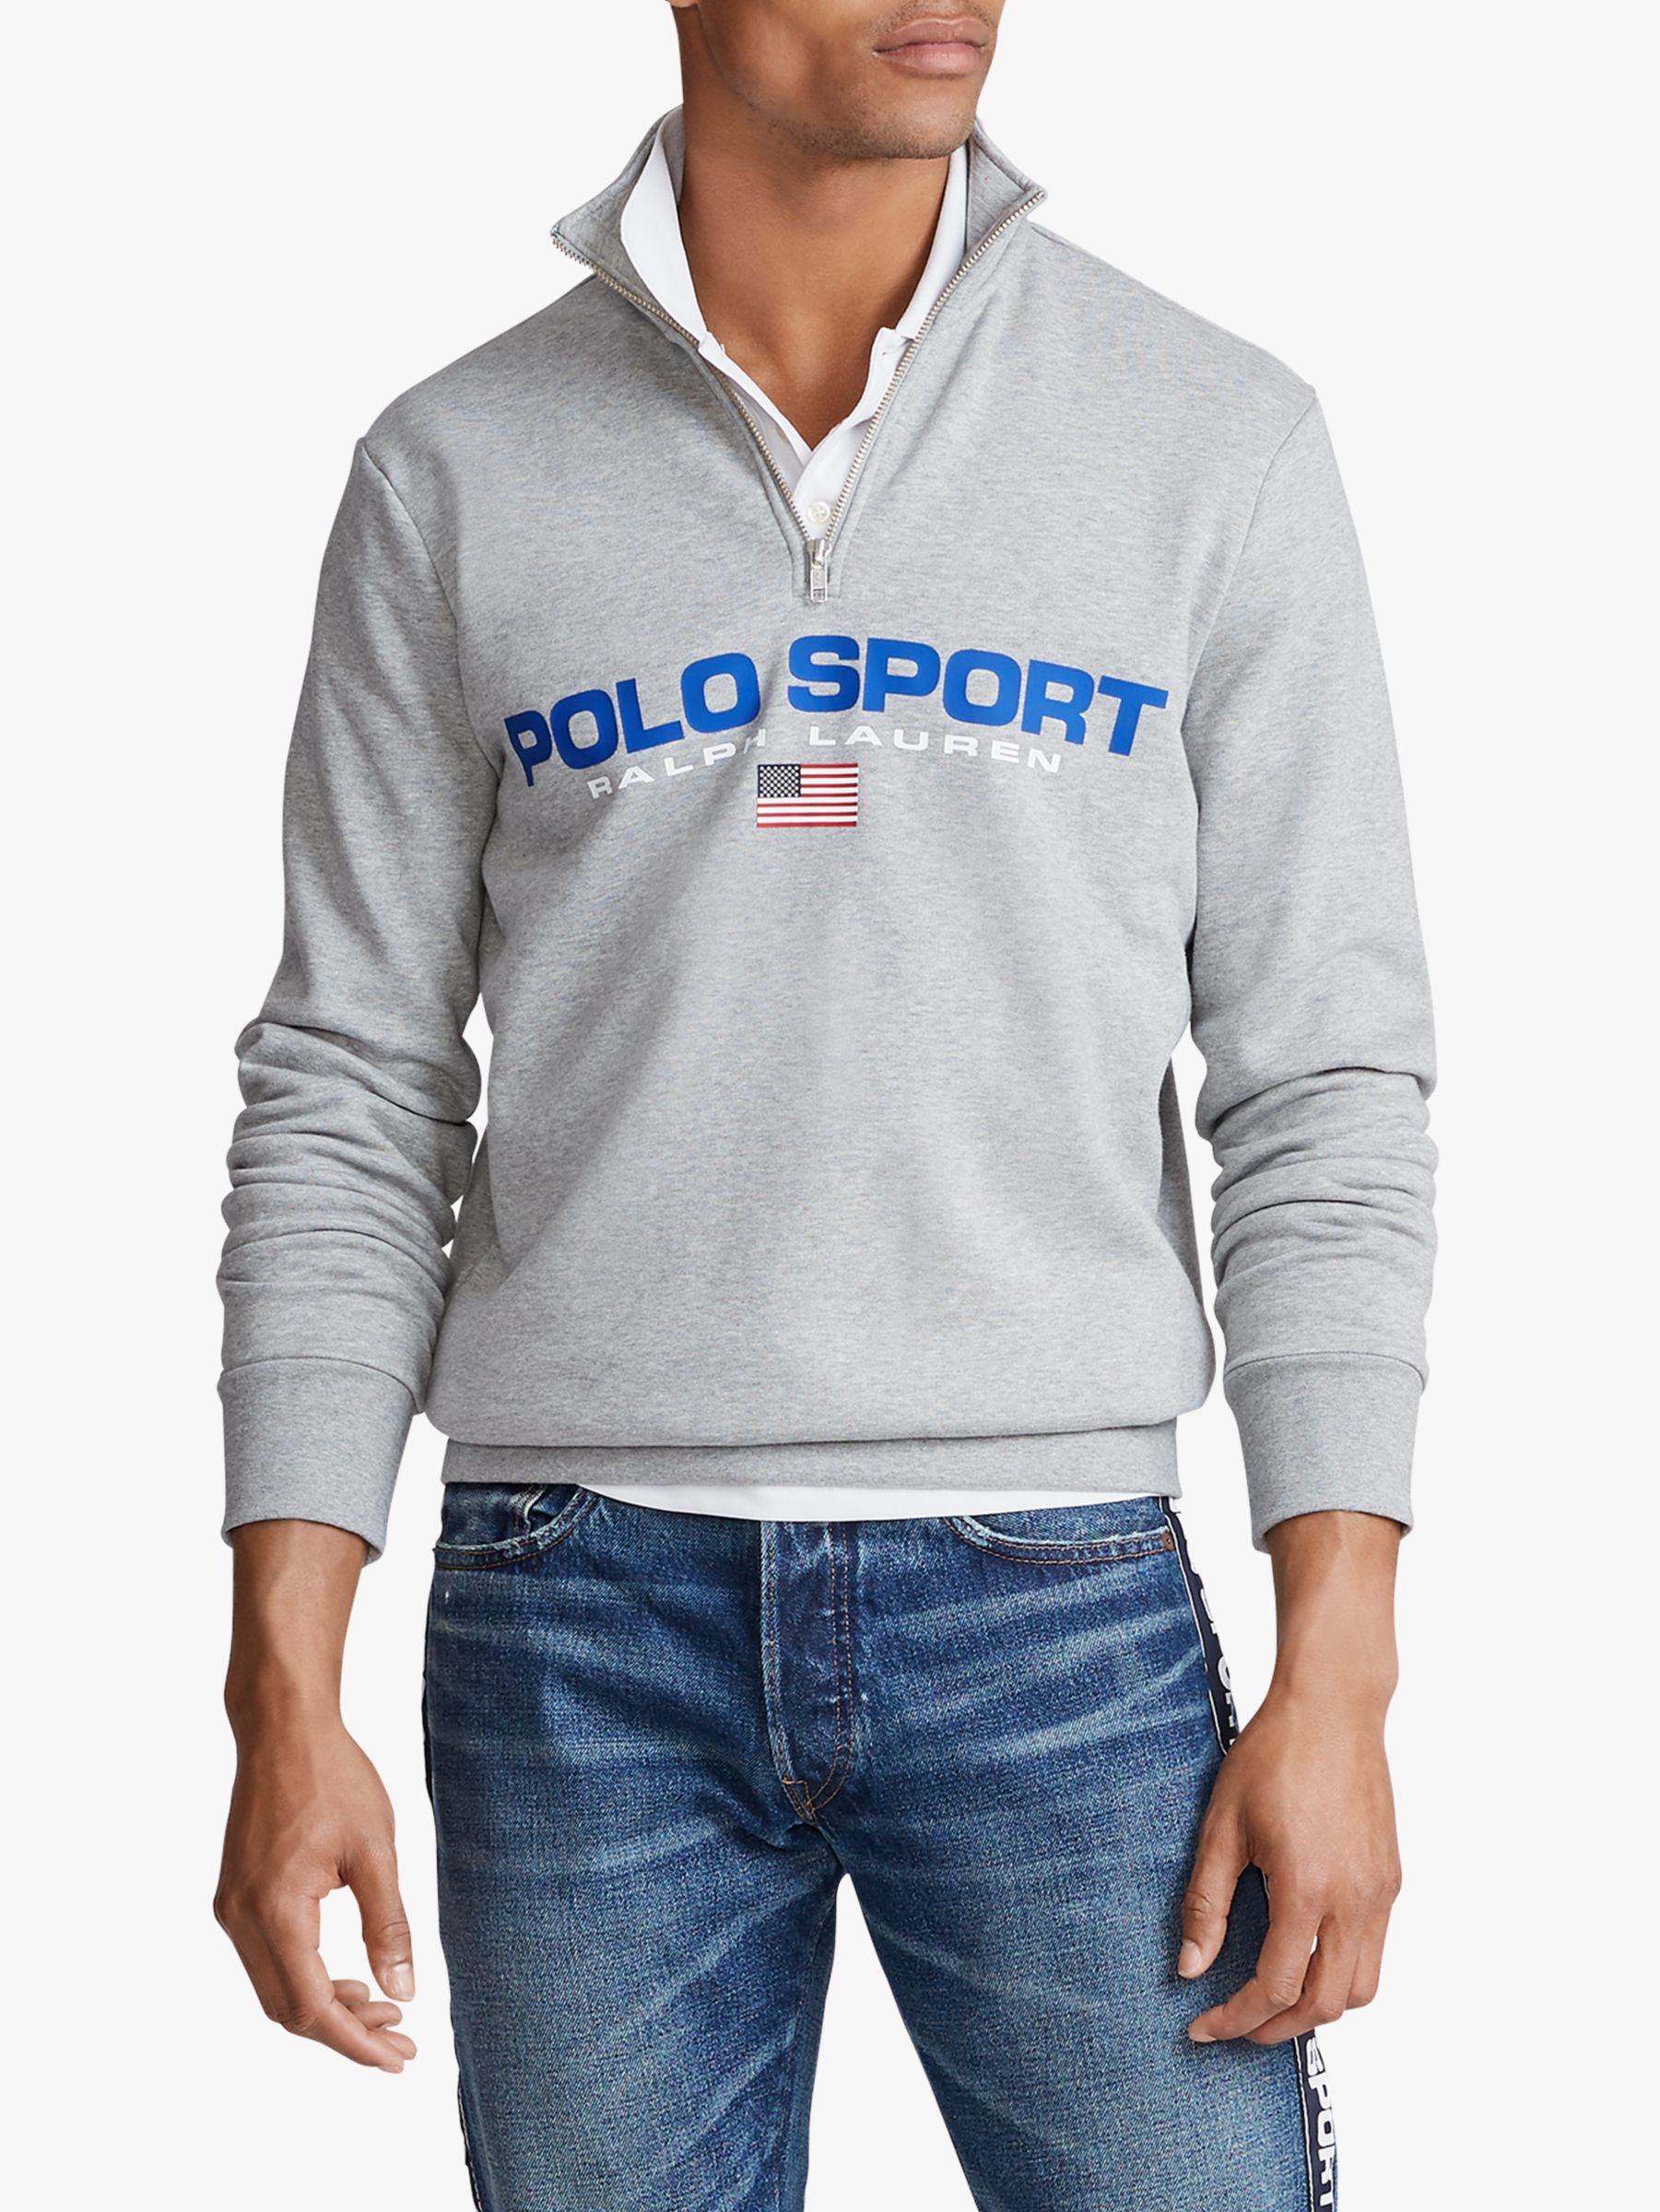 Polo Ralph Lauren Polo Sport Half Zip 